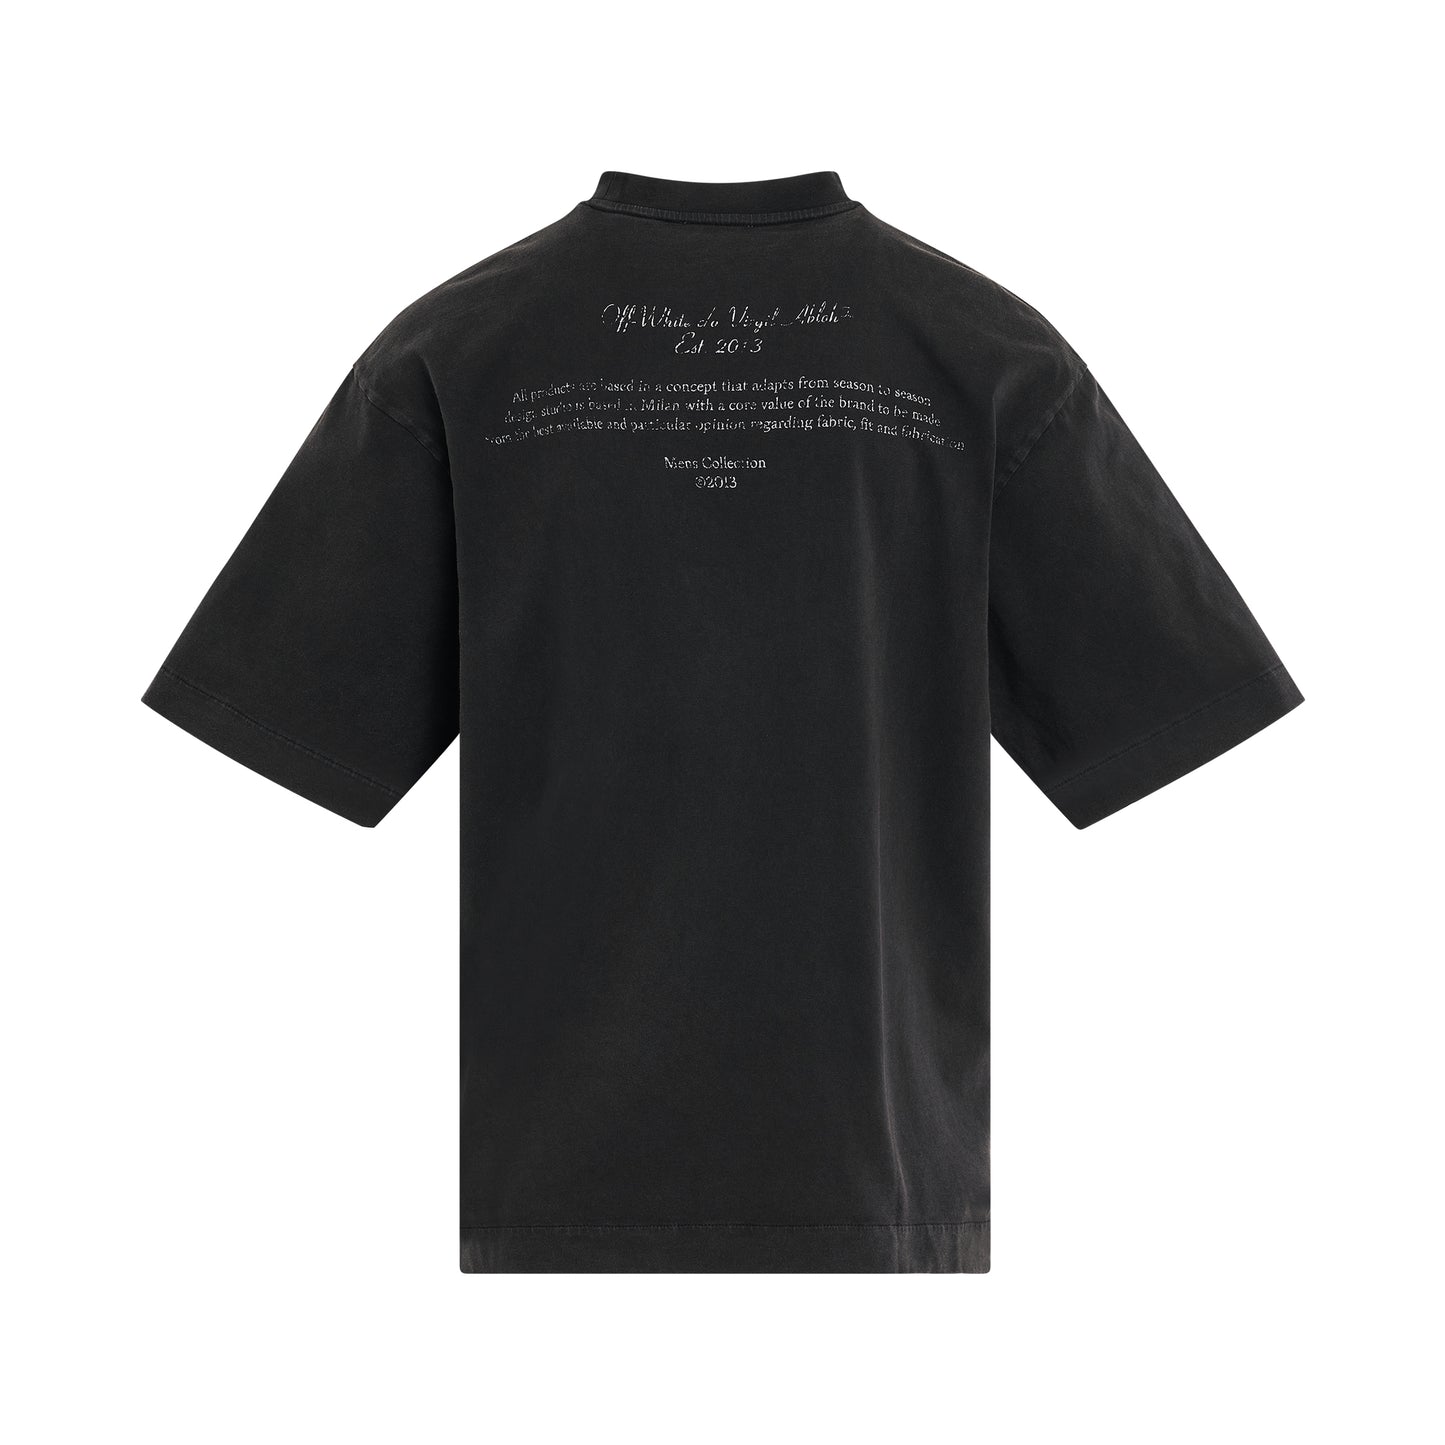 Mary Print Skate T-Shirt in Black/White